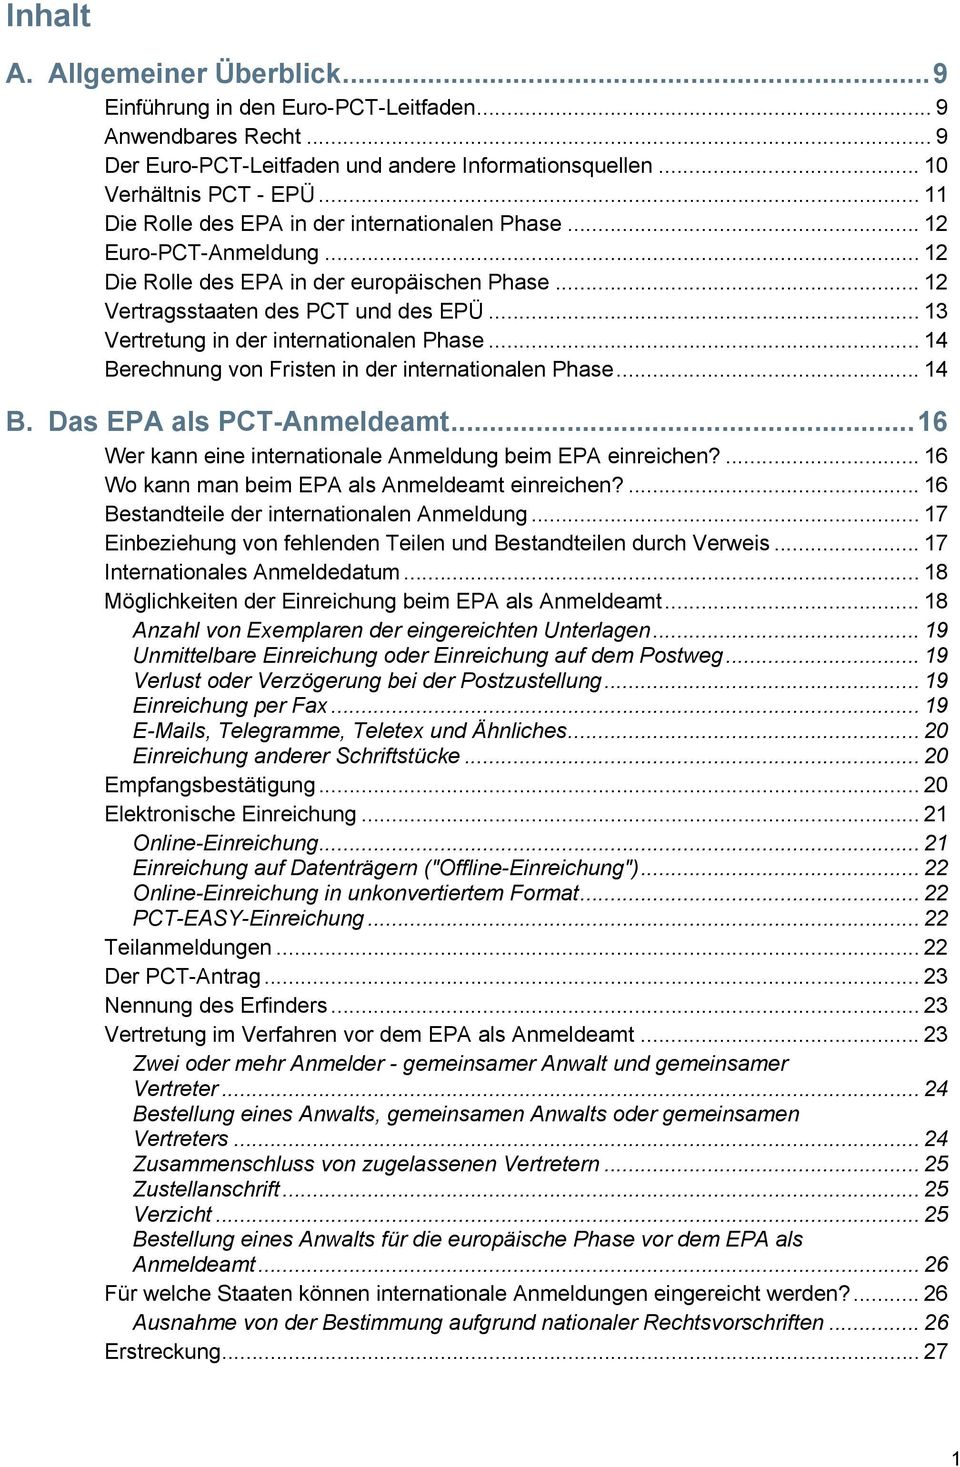 .. 13 Vertretung in der internationalen Phase... 14 Berechnung von Fristen in der internationalen Phase... 14 B. Das EPA als PCT-Anmeldeamt.